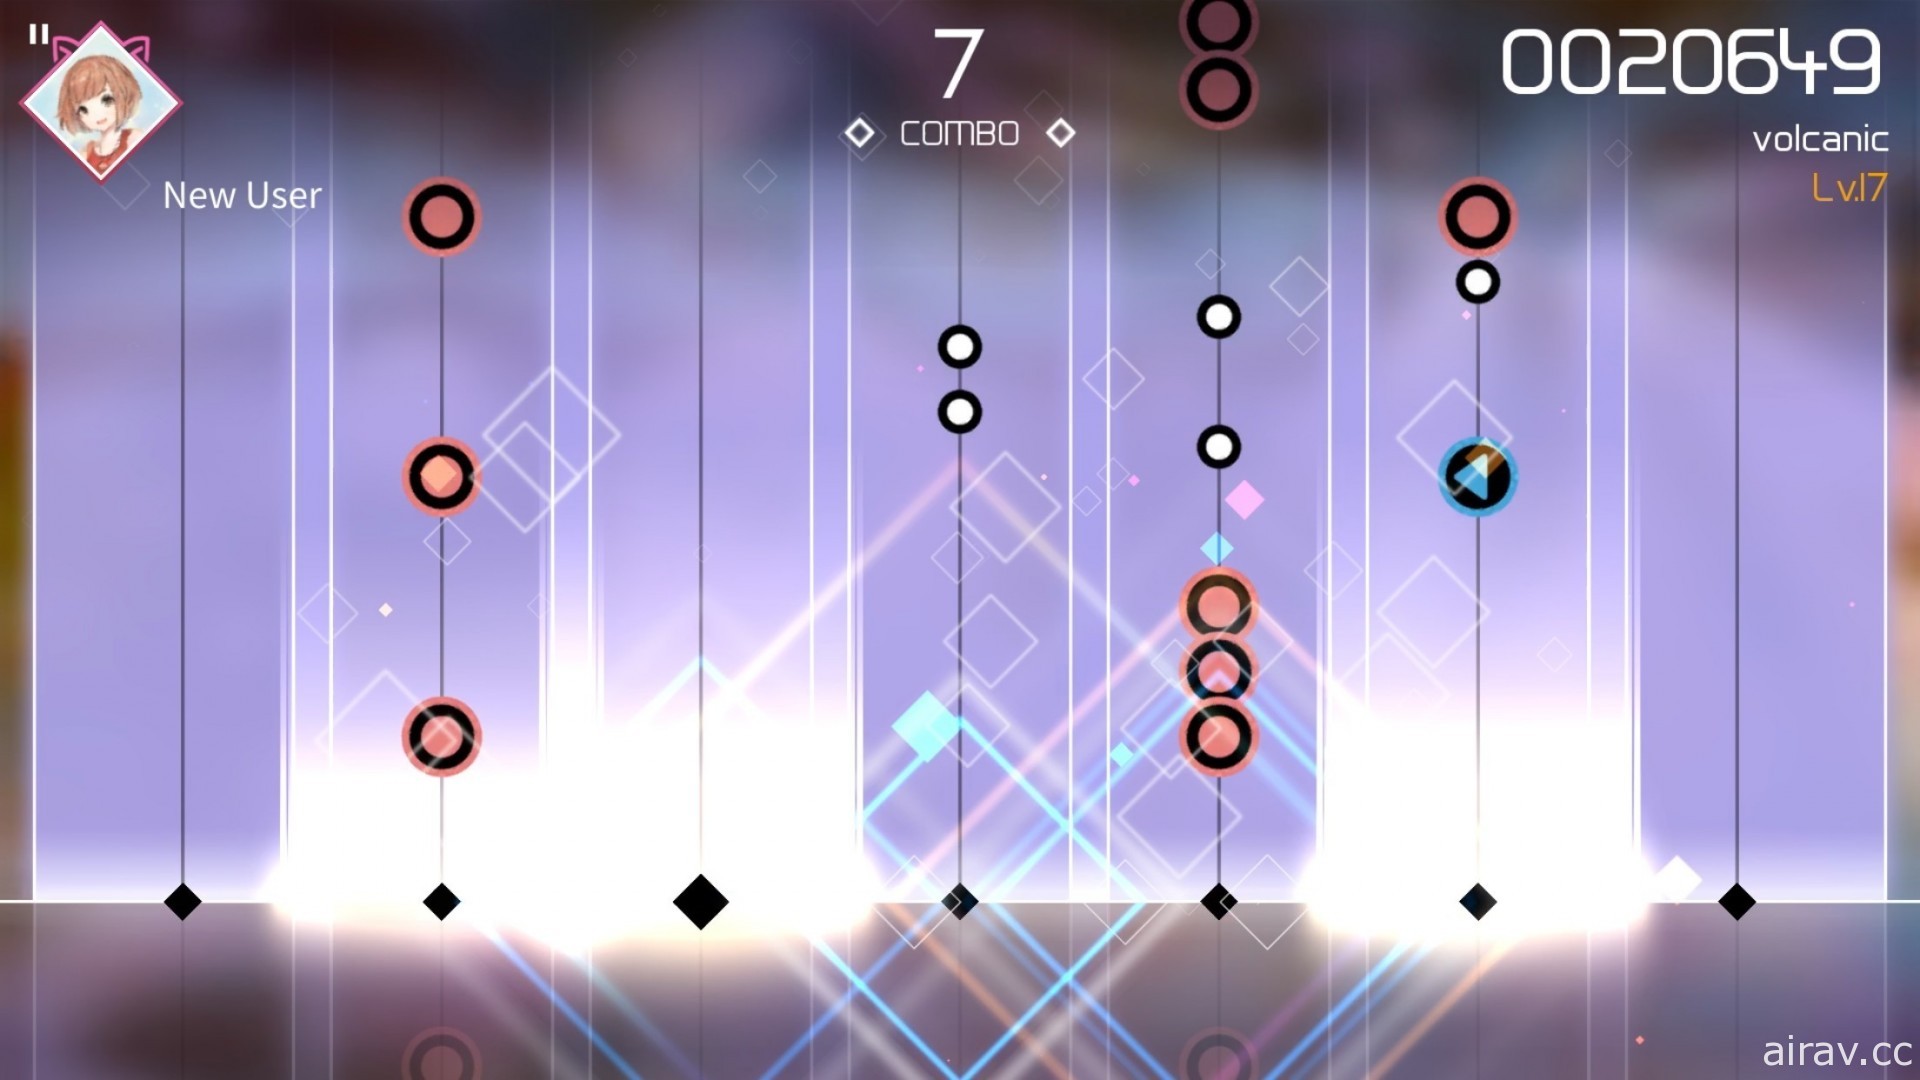 音樂節奏遊戲《VOEZ》更新 2.0 版 追加「任務」與「挑戰」系統